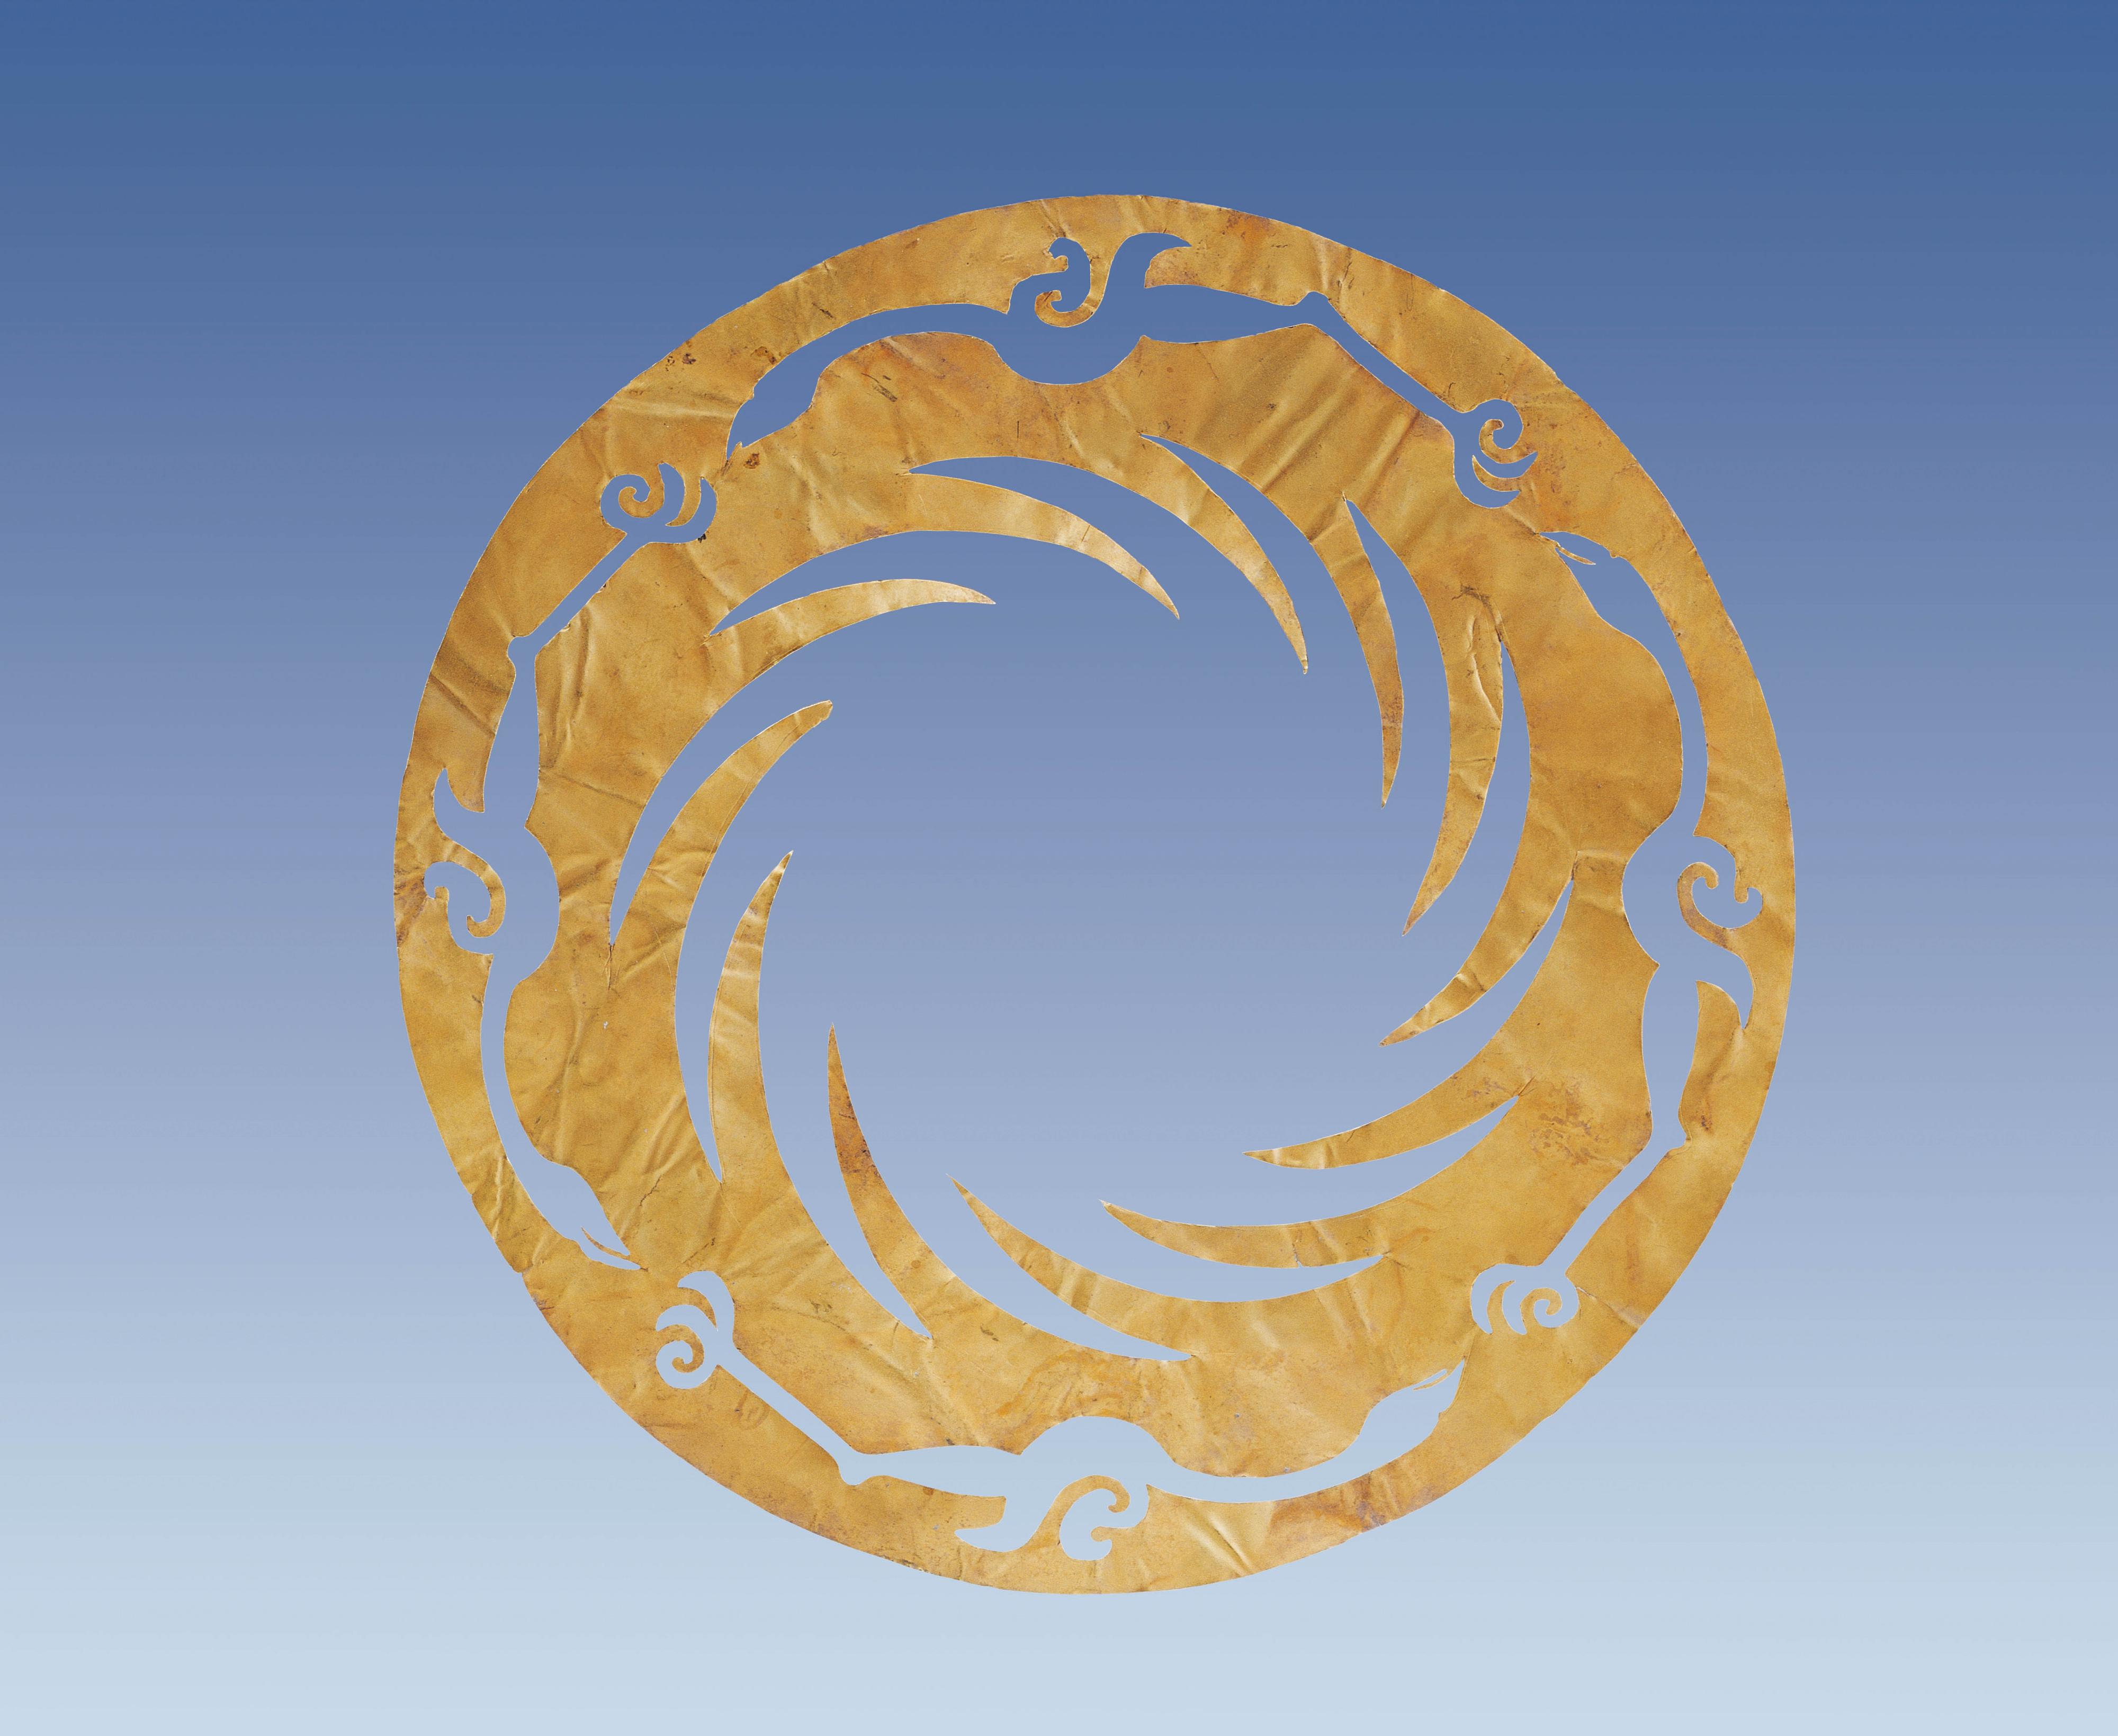 香港文物探知馆明日（十二月三十日）起举办「金沙之光──古蜀文明展」。图示「太阳神鸟」金箔饰的复制品，其原型属金沙遗址中最重要的国宝级文物，是展览重点展品之一。